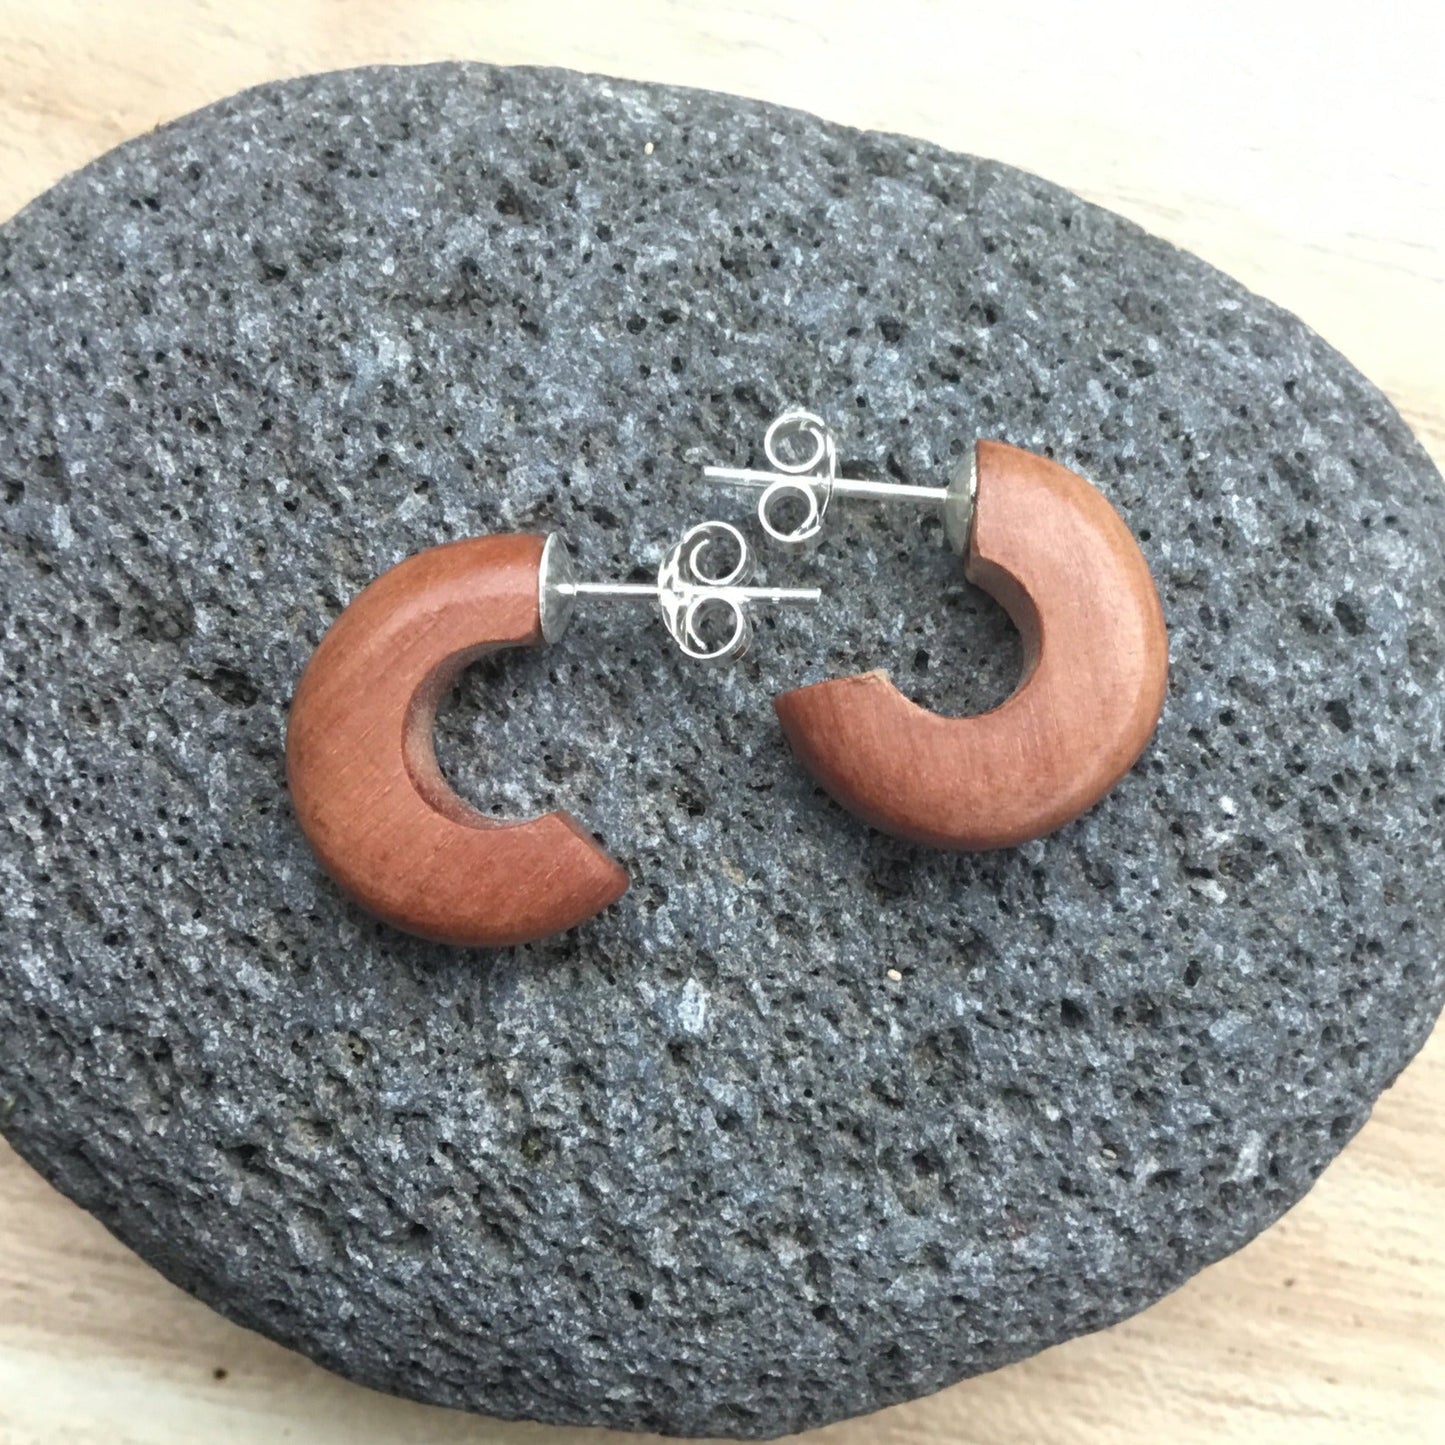 wooden hoop earrings.